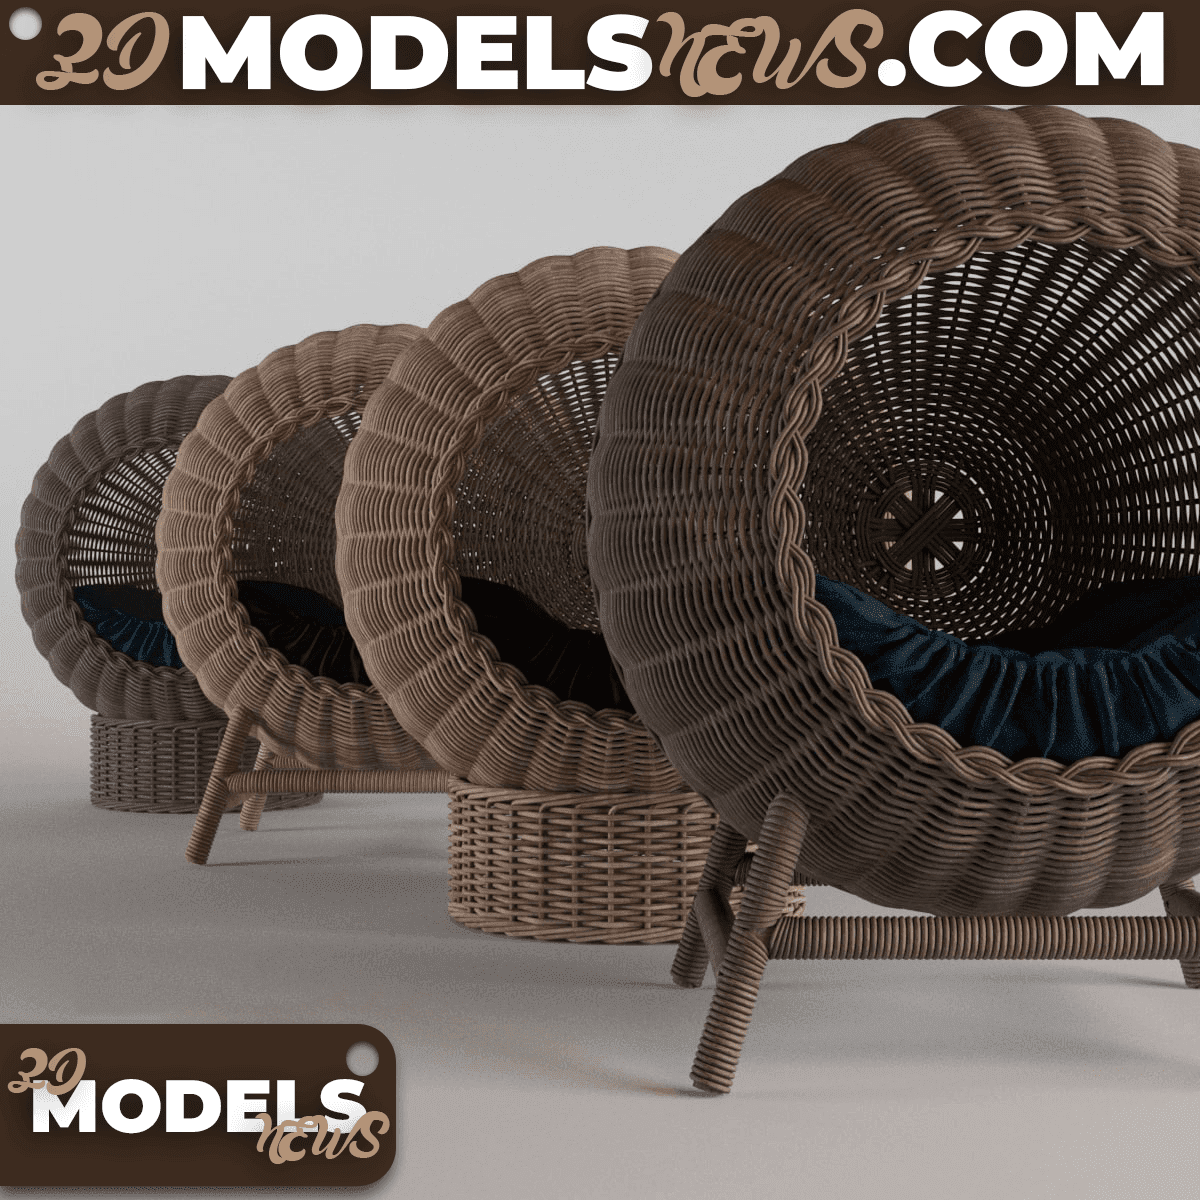 Wicker baskets model for pets 1